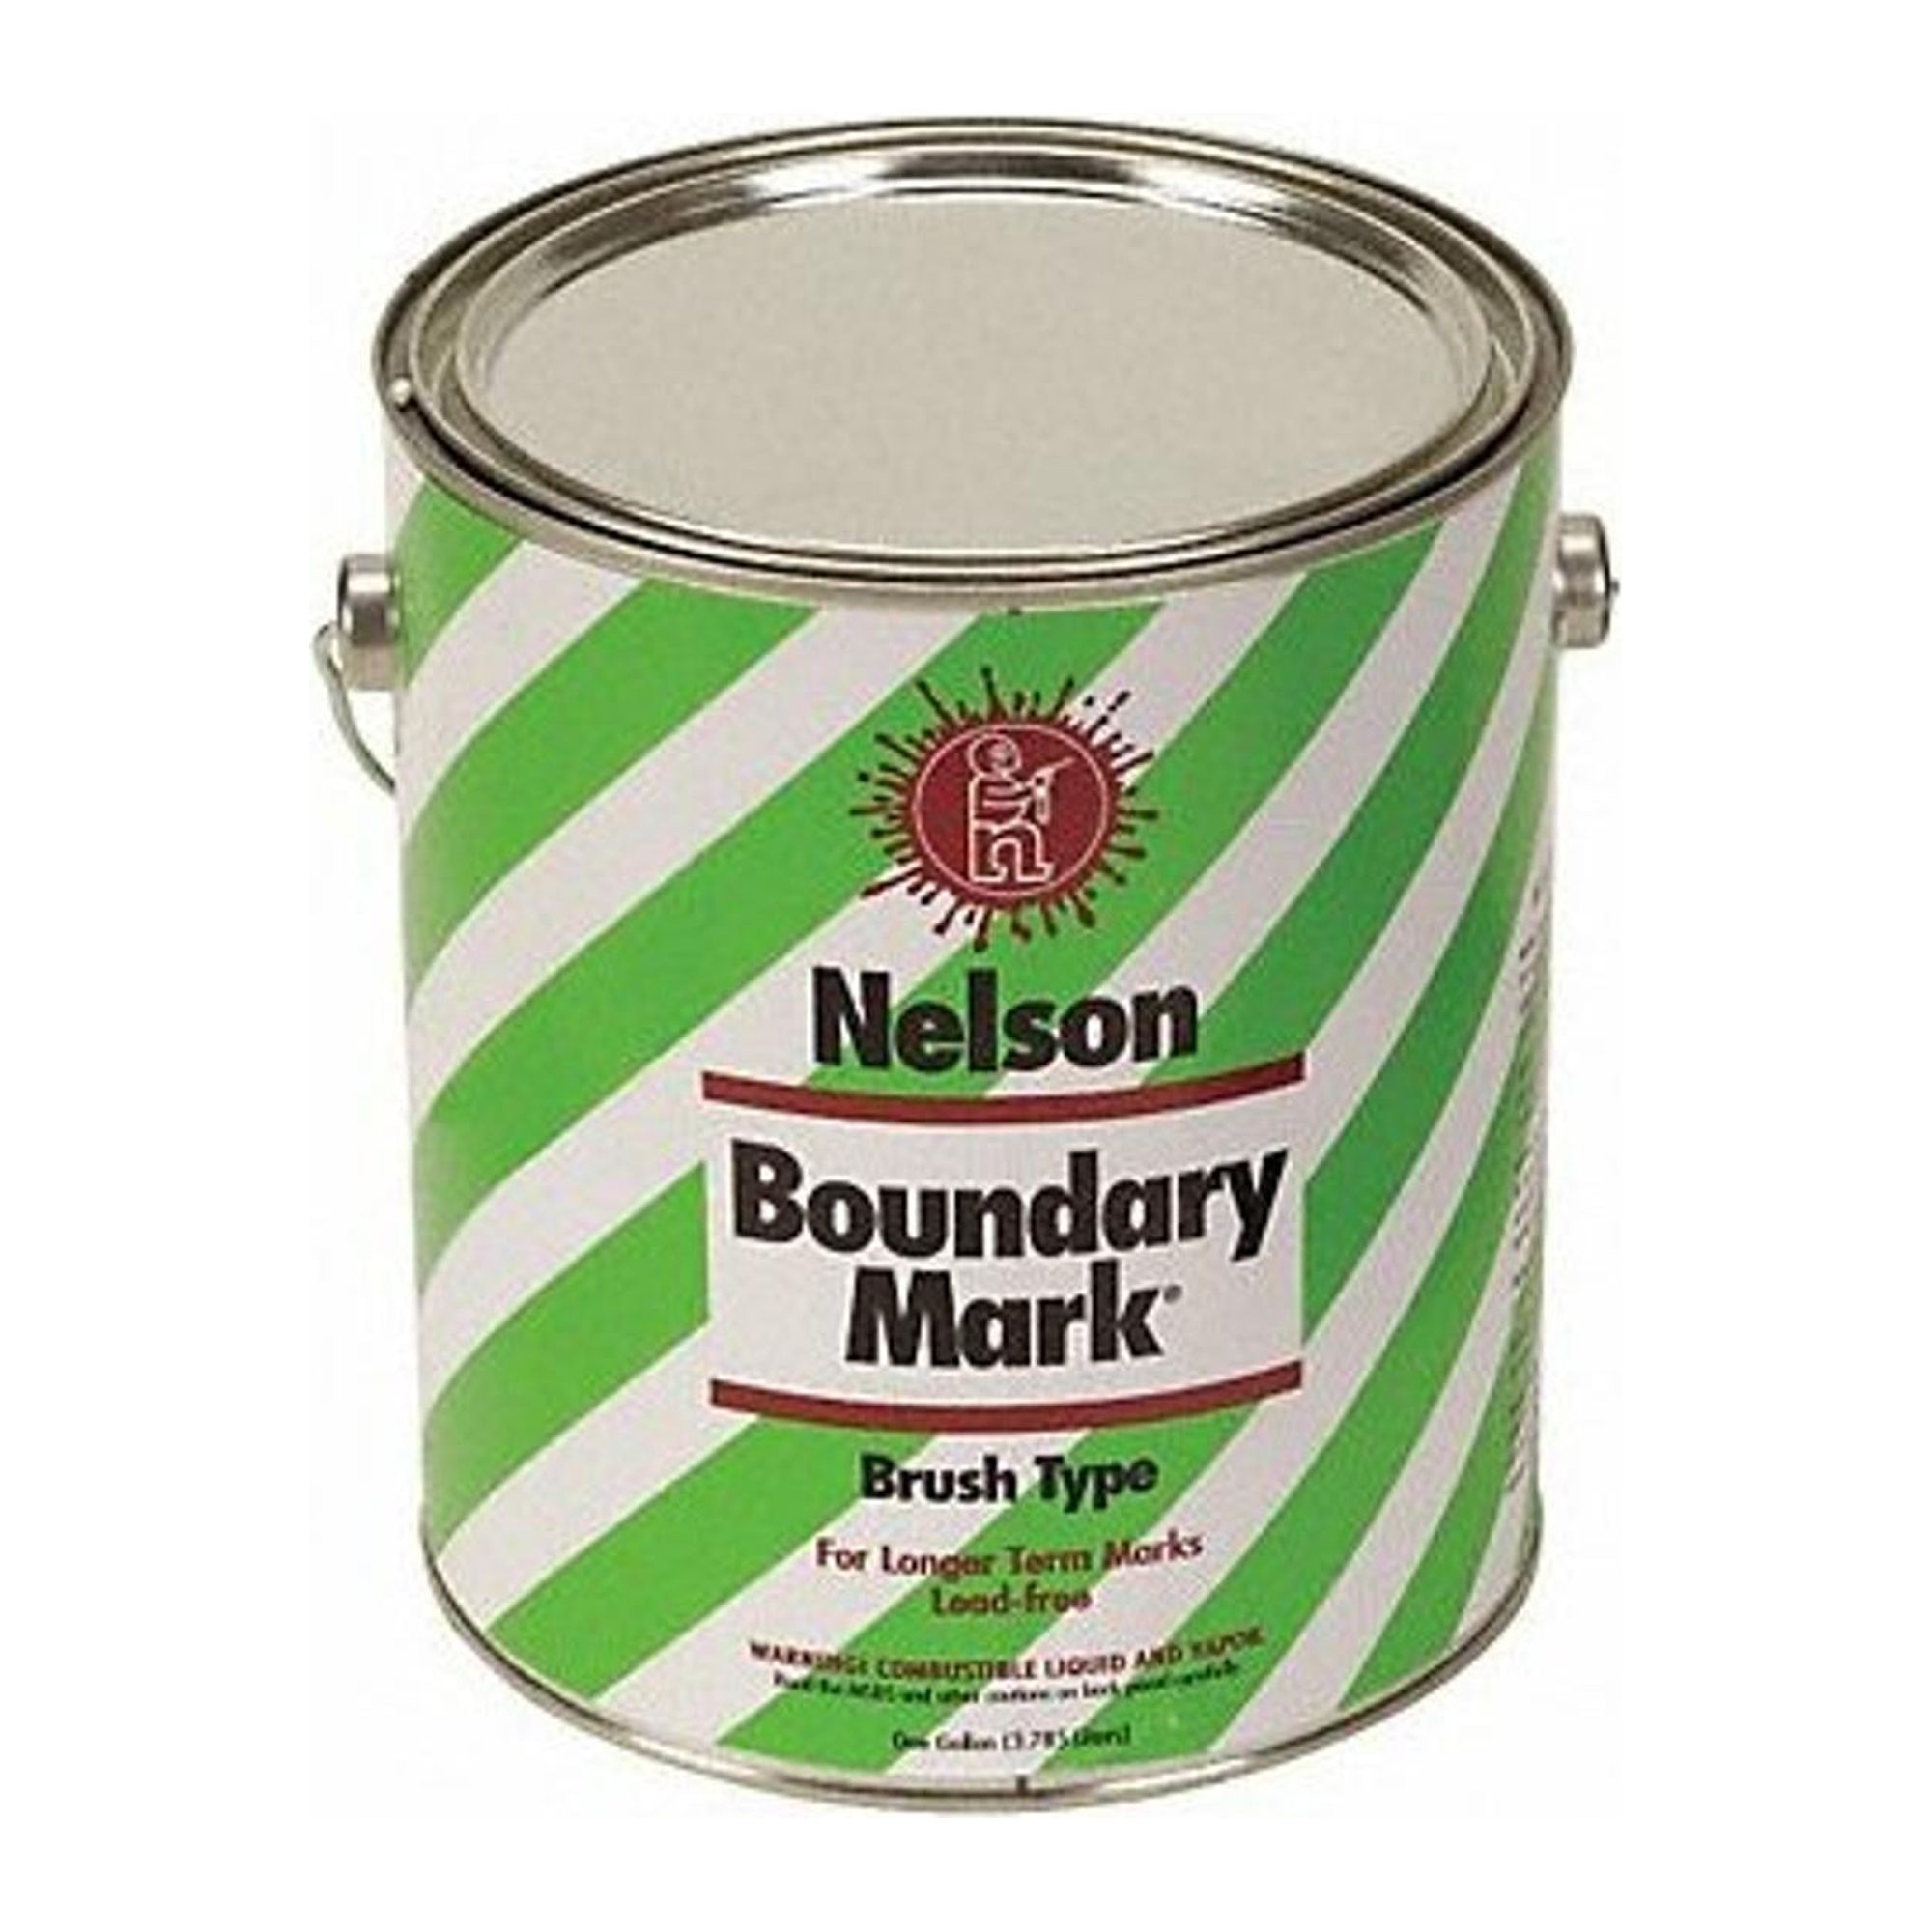 Nelson Paint Boundary Marking Paint,1 gal,Orange  29 27 GL ORANGE - image 1 of 1